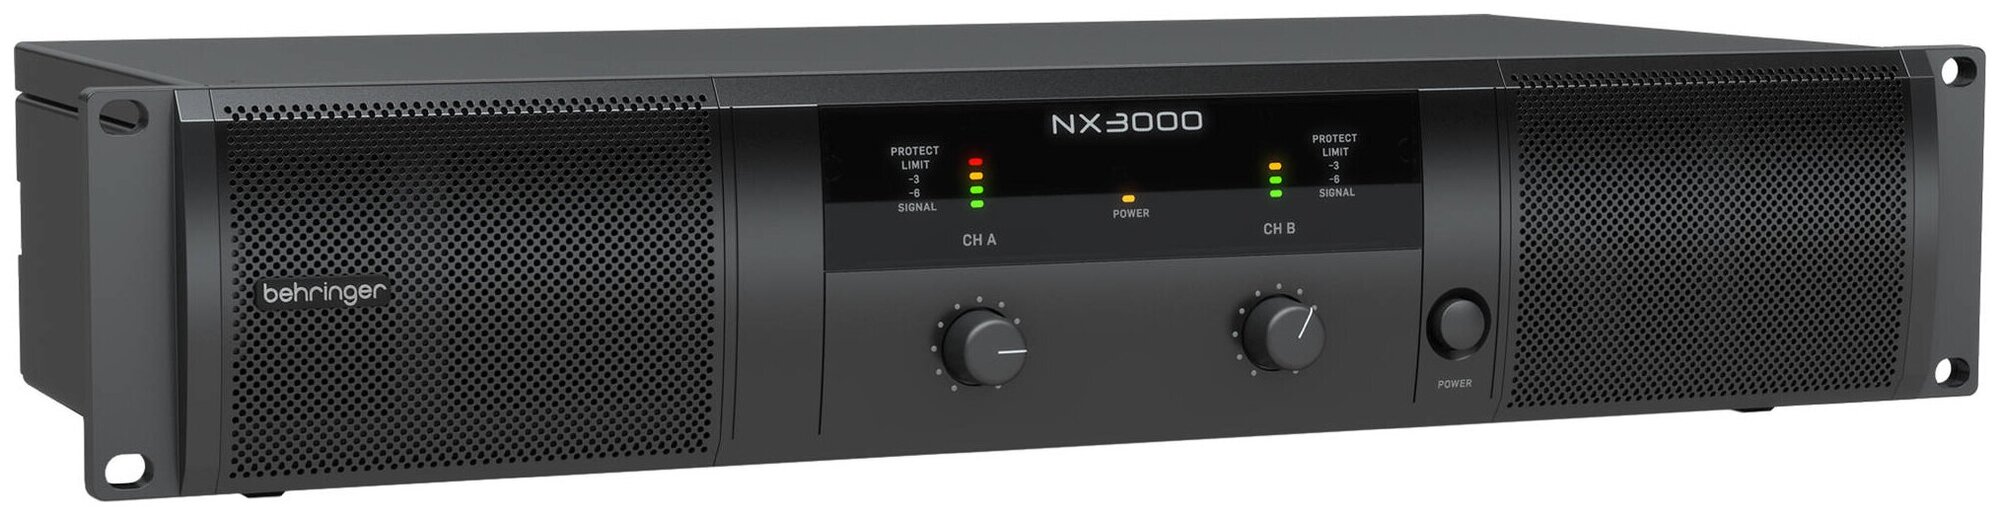 Behringer NX3000 ультра компактный усилитель